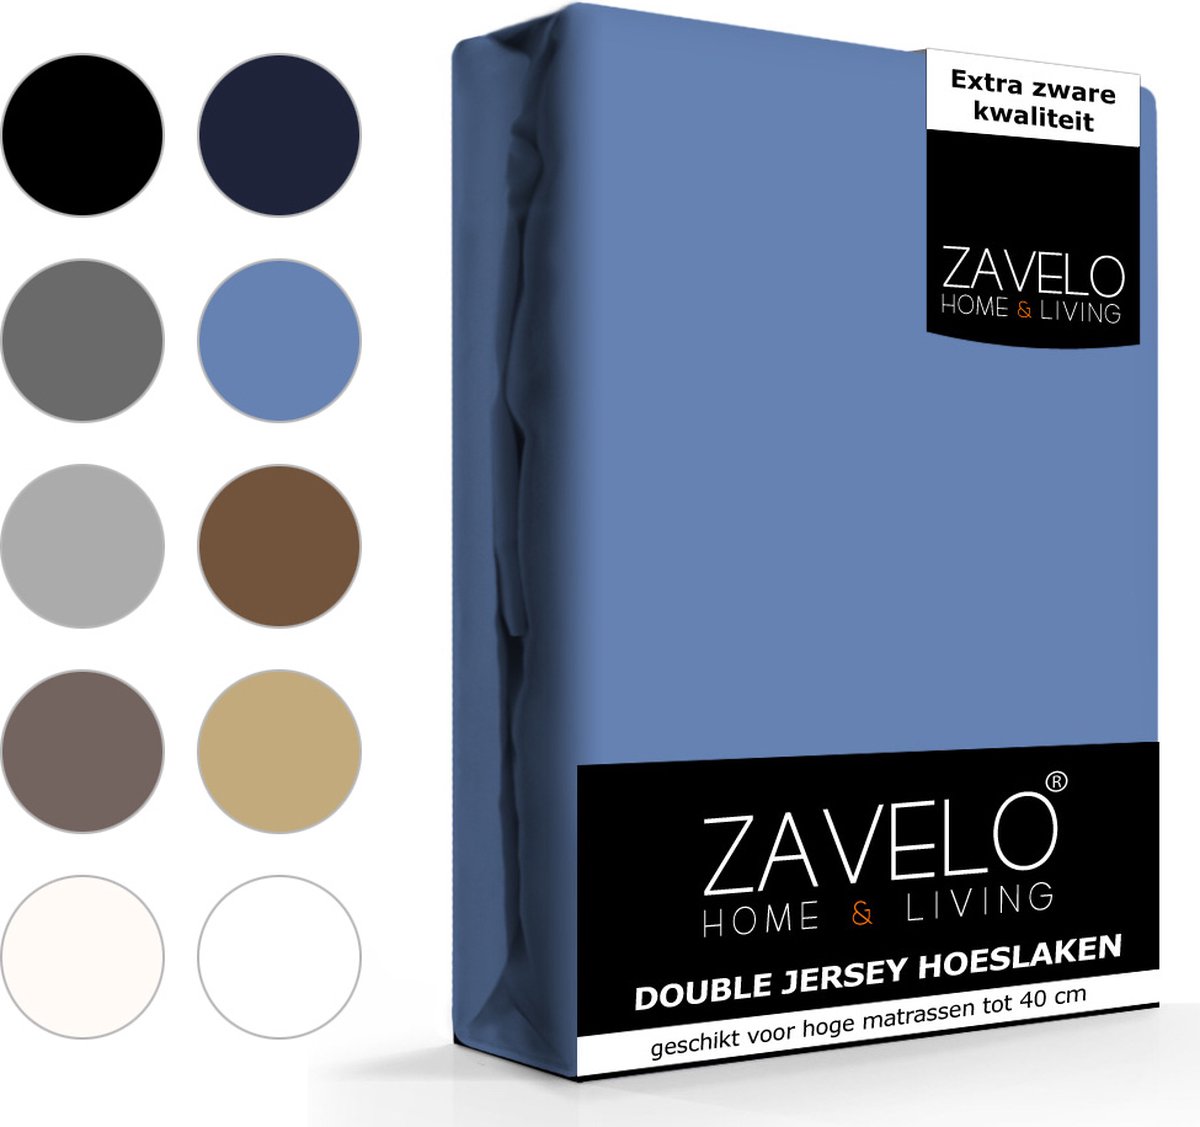 Slaaptextiel Zavelo Double Jersey Hoeslaken-2-persoons (140x200 Cm) - Blauw